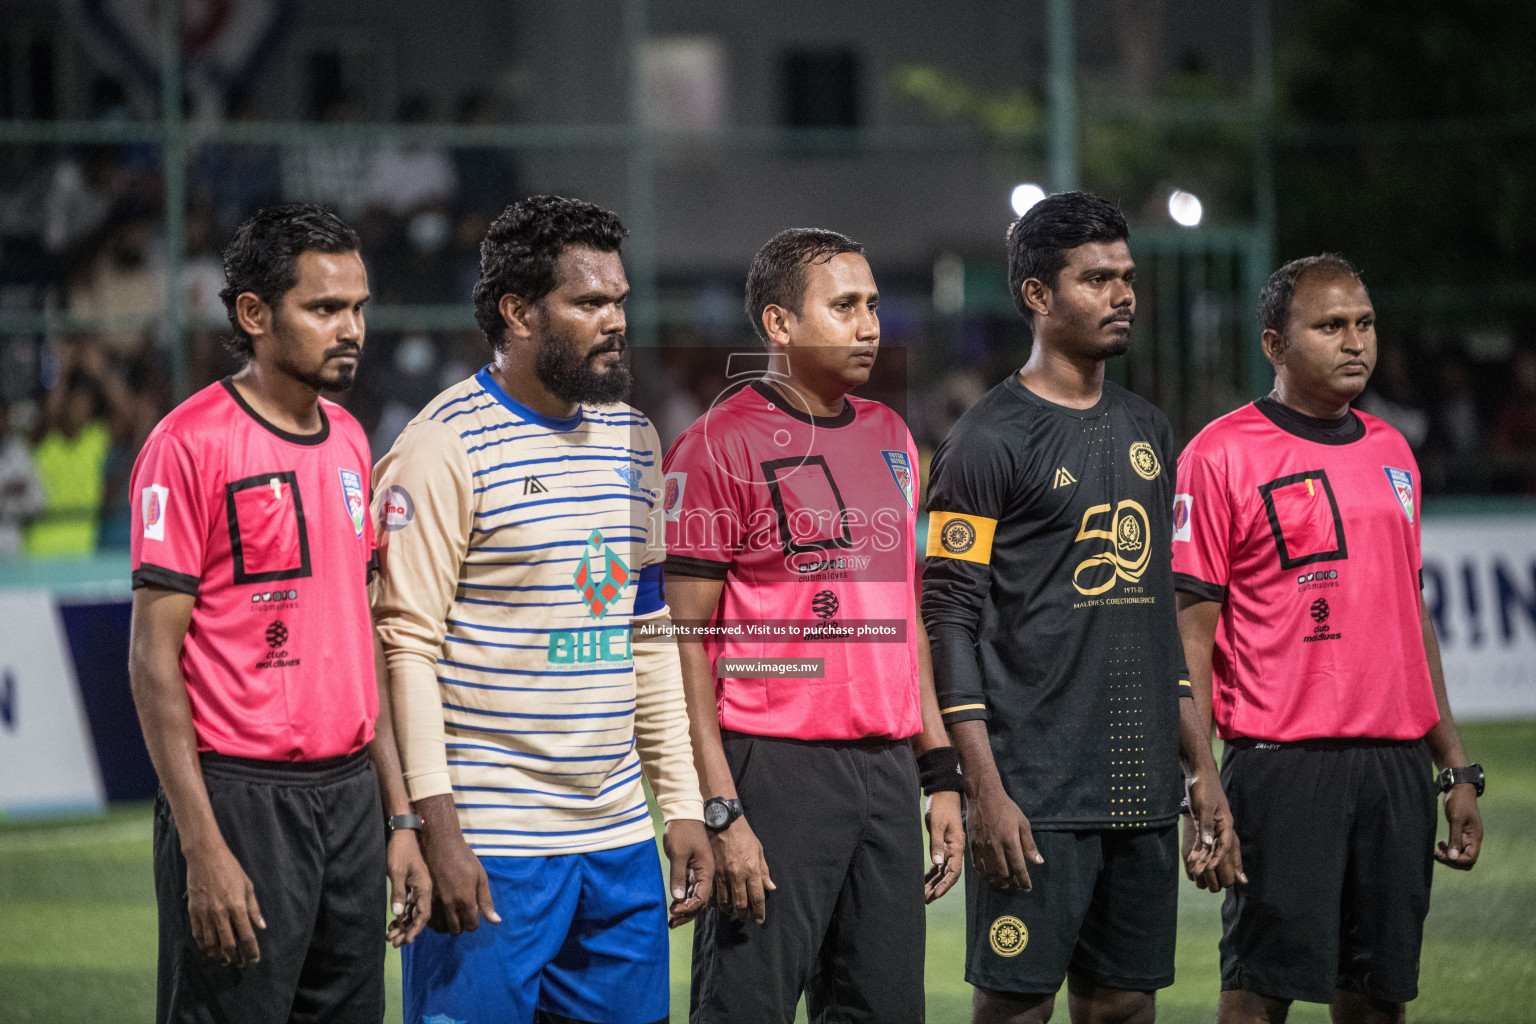 Club Maldives Day 4